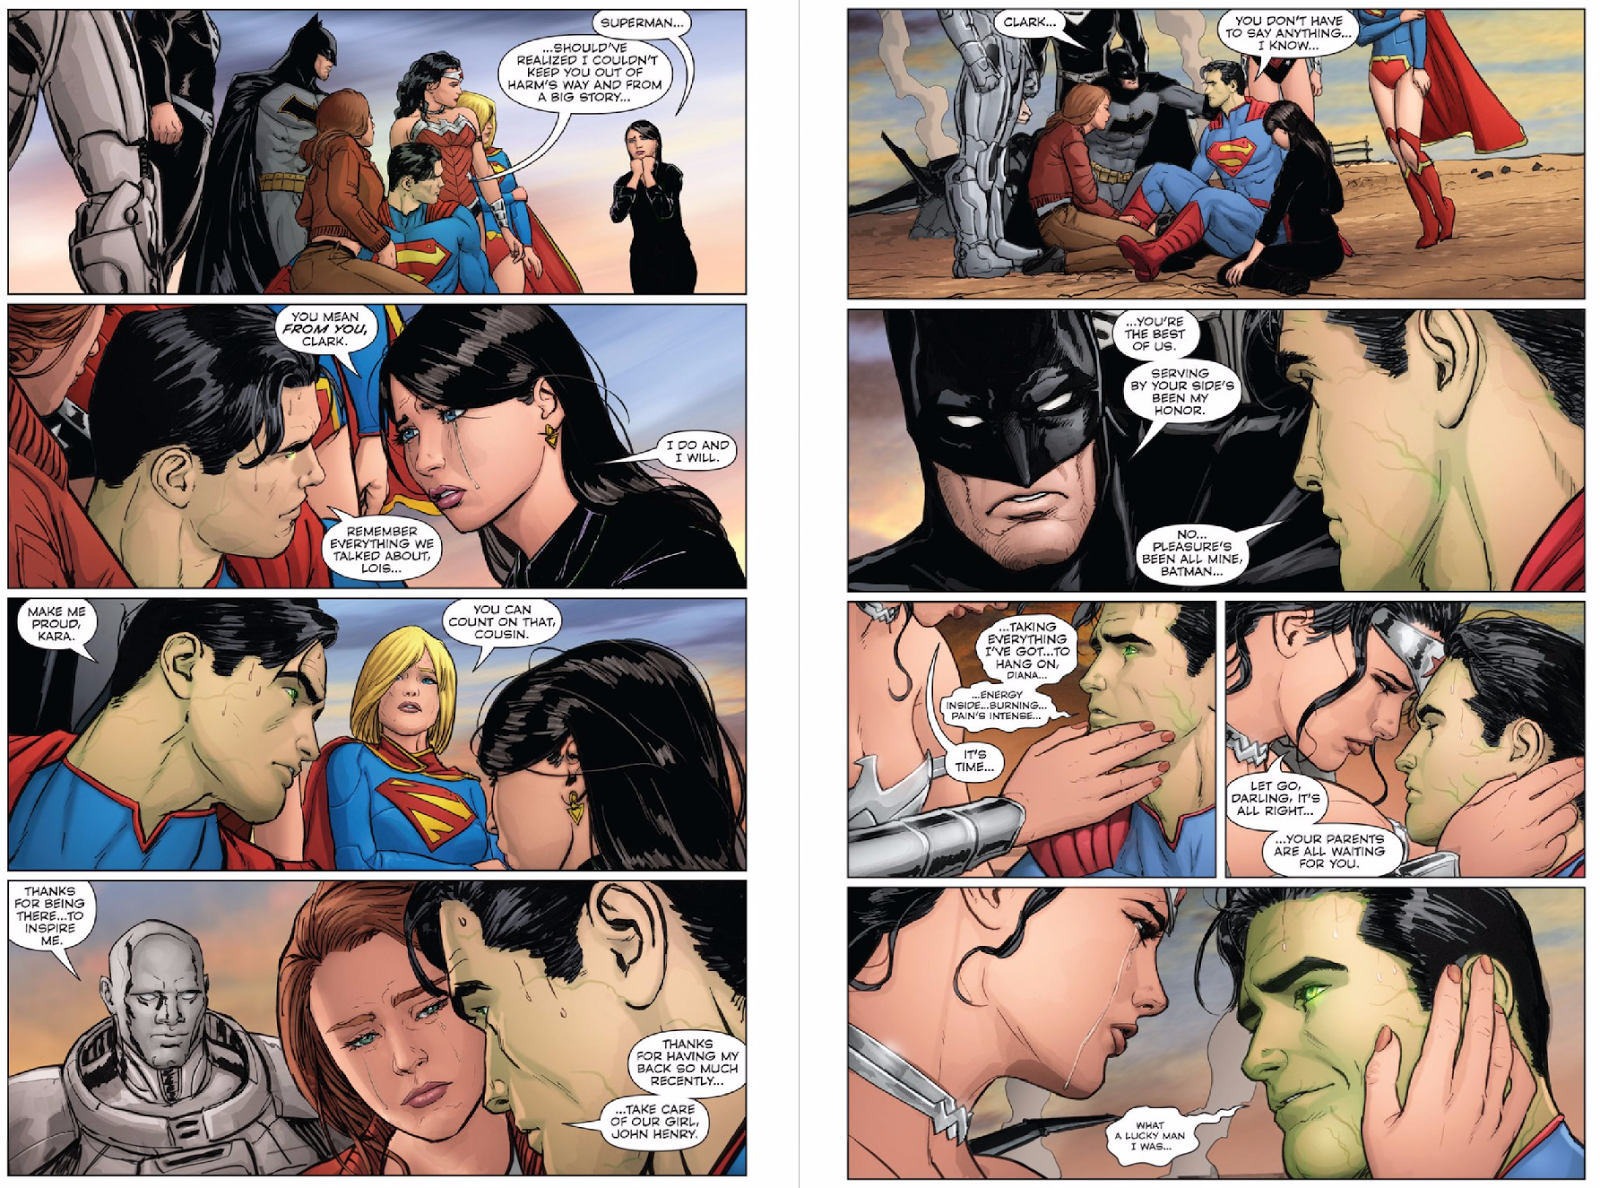 41 - [DC Comics] Superman: Discusión General - Página 10 Mtmc7v8ujjeuu7woe7ue